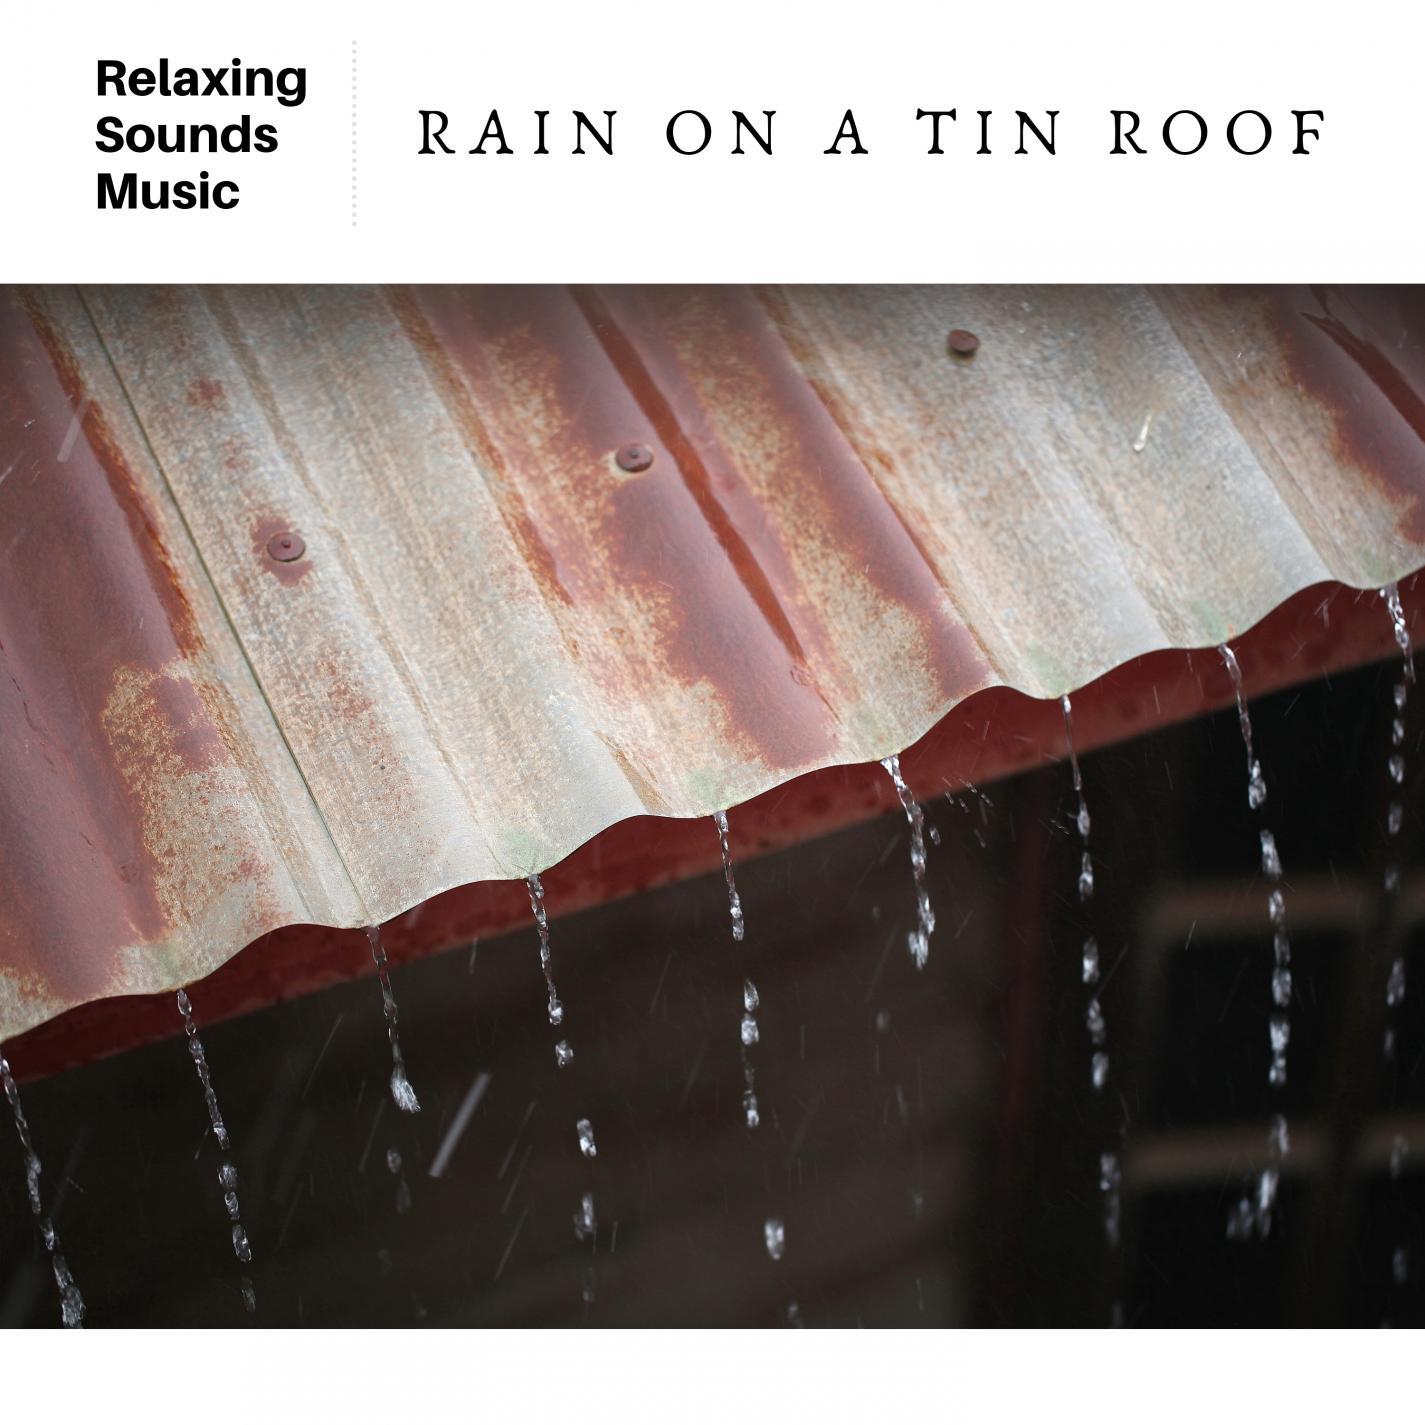 Rain on a Tin Roof